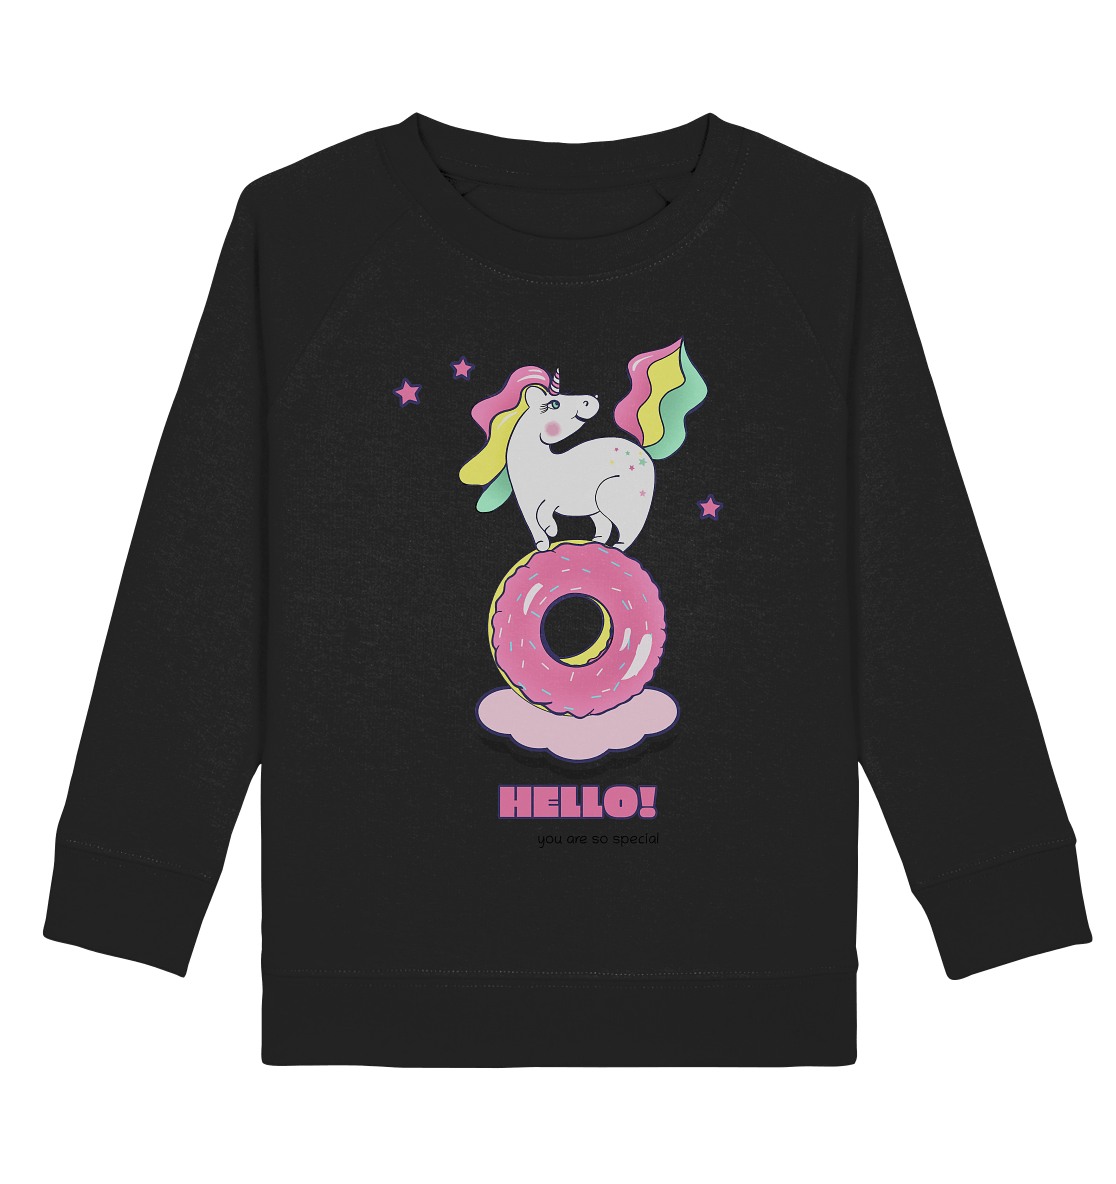 Einhorn Kinder Sweatshirt in schwarz mit bunden Einhorn mit bunten Einhorn auf Donut Print